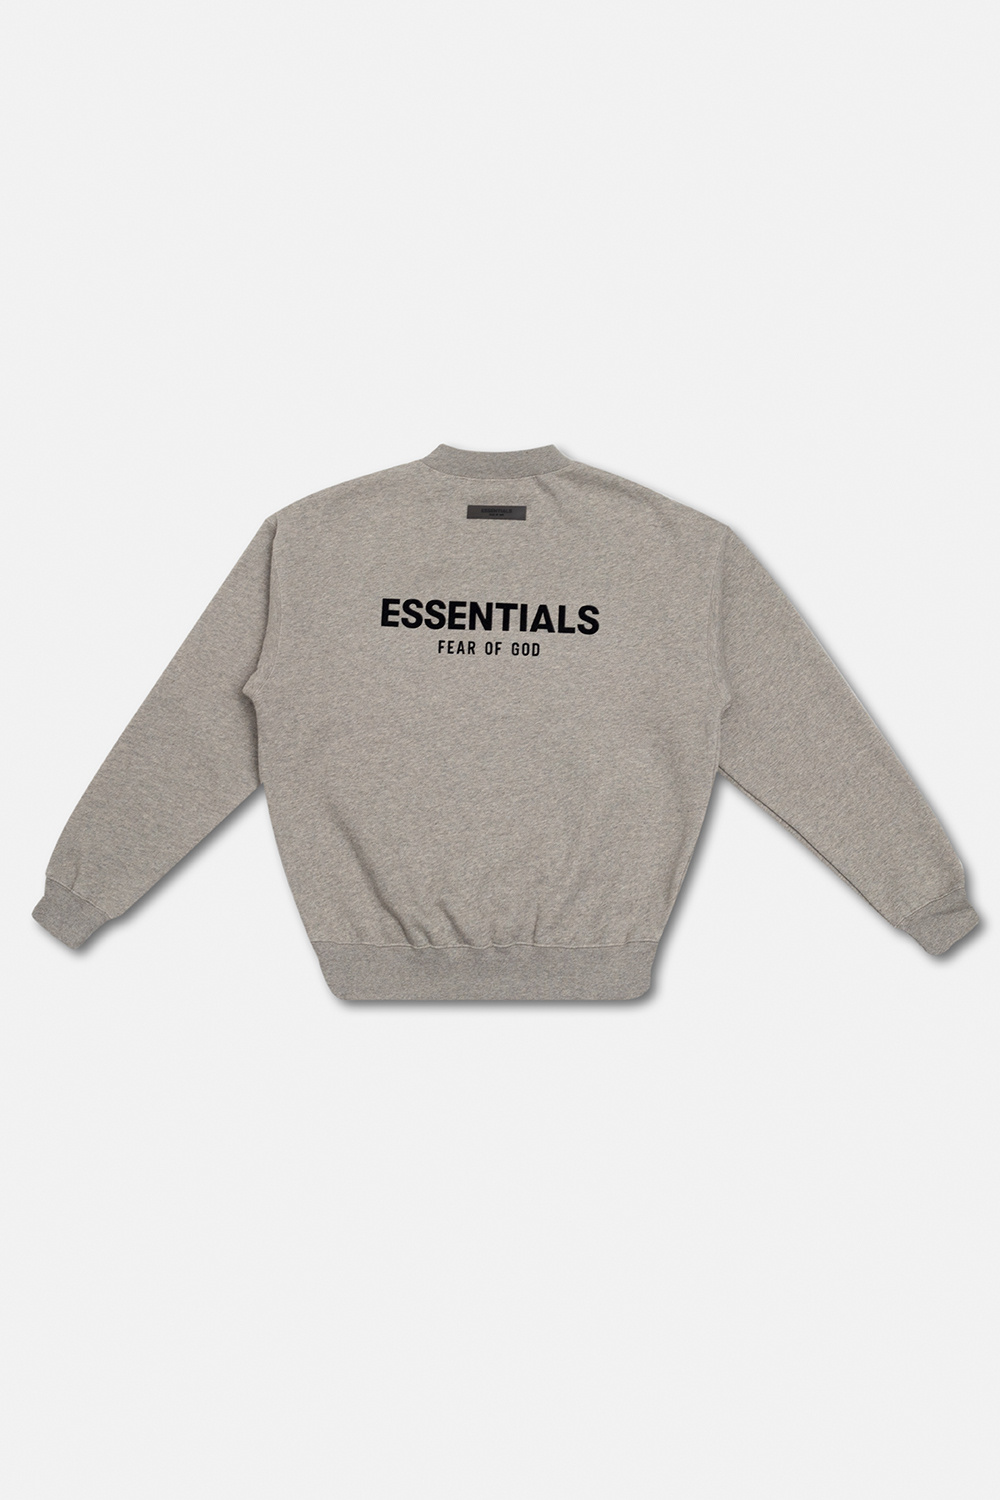 Fear Of God Essentials Kids sweatshirt Grey with logo